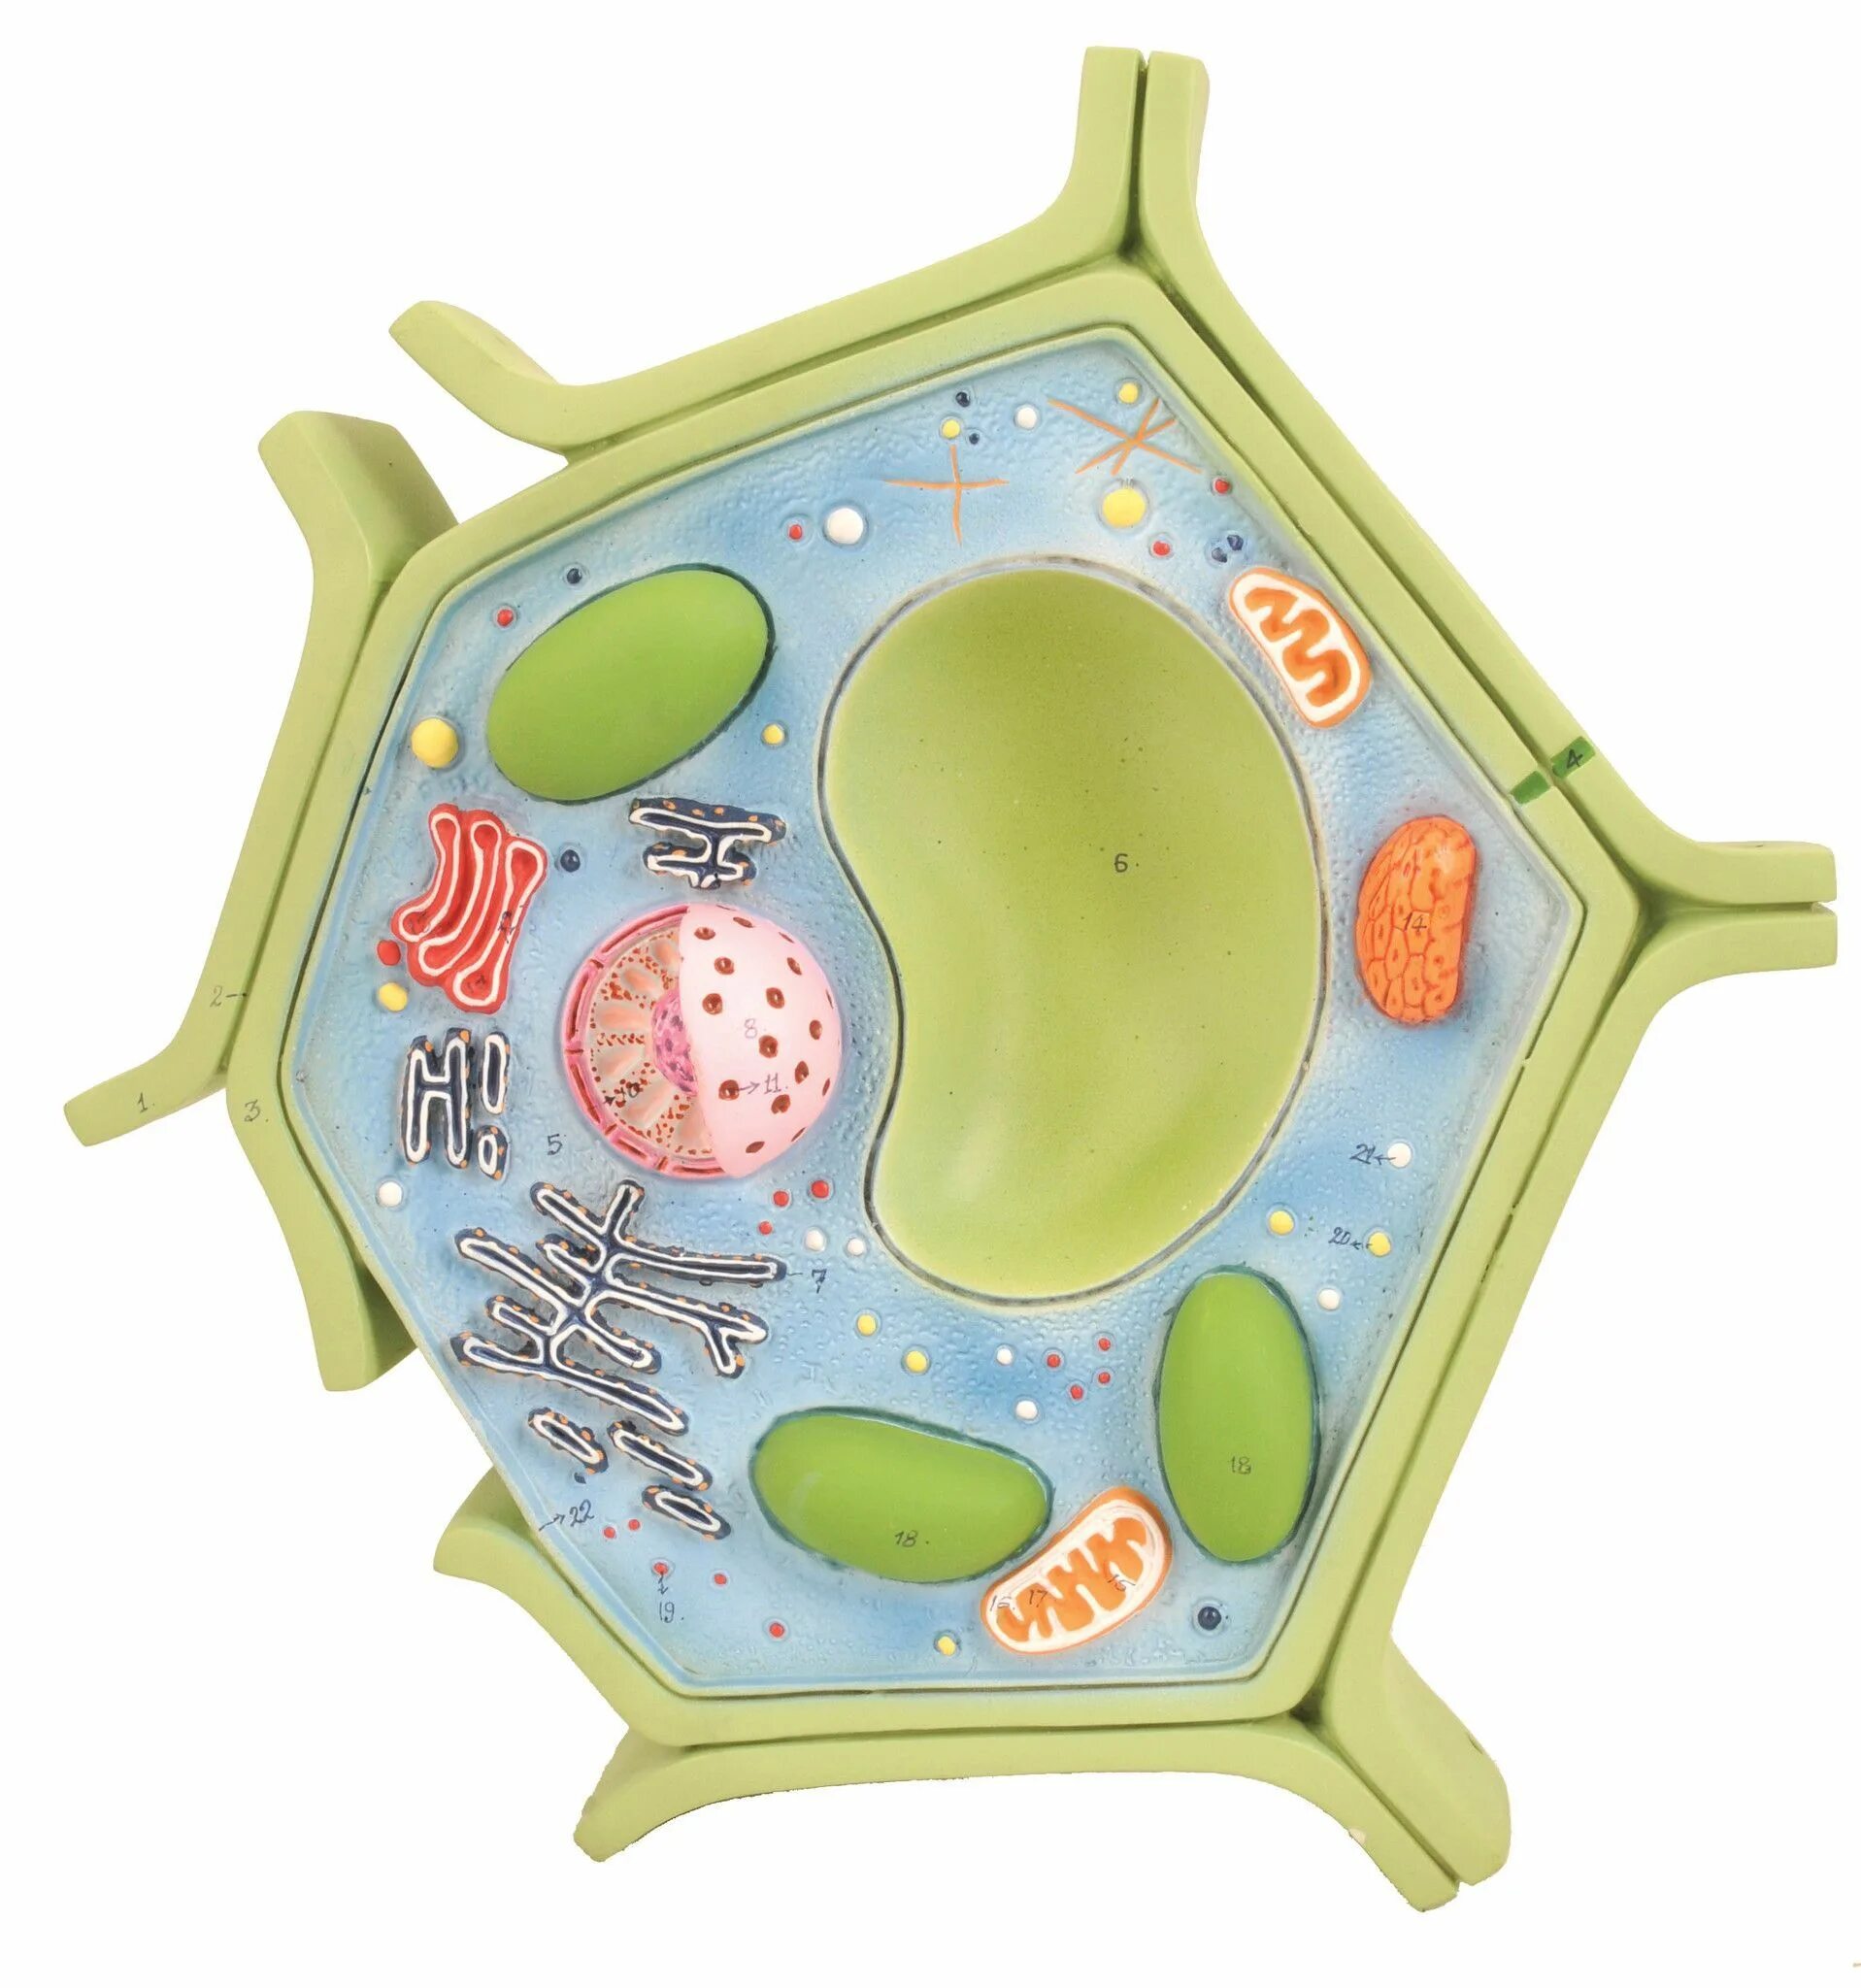 Клетка 5. Модель клетки растения биология 5 класс. Модель растительной клетки 5 класс биология. Макет строения растительной клетки биология 5. Объёмная модель растительной клетки 5 класс биология.